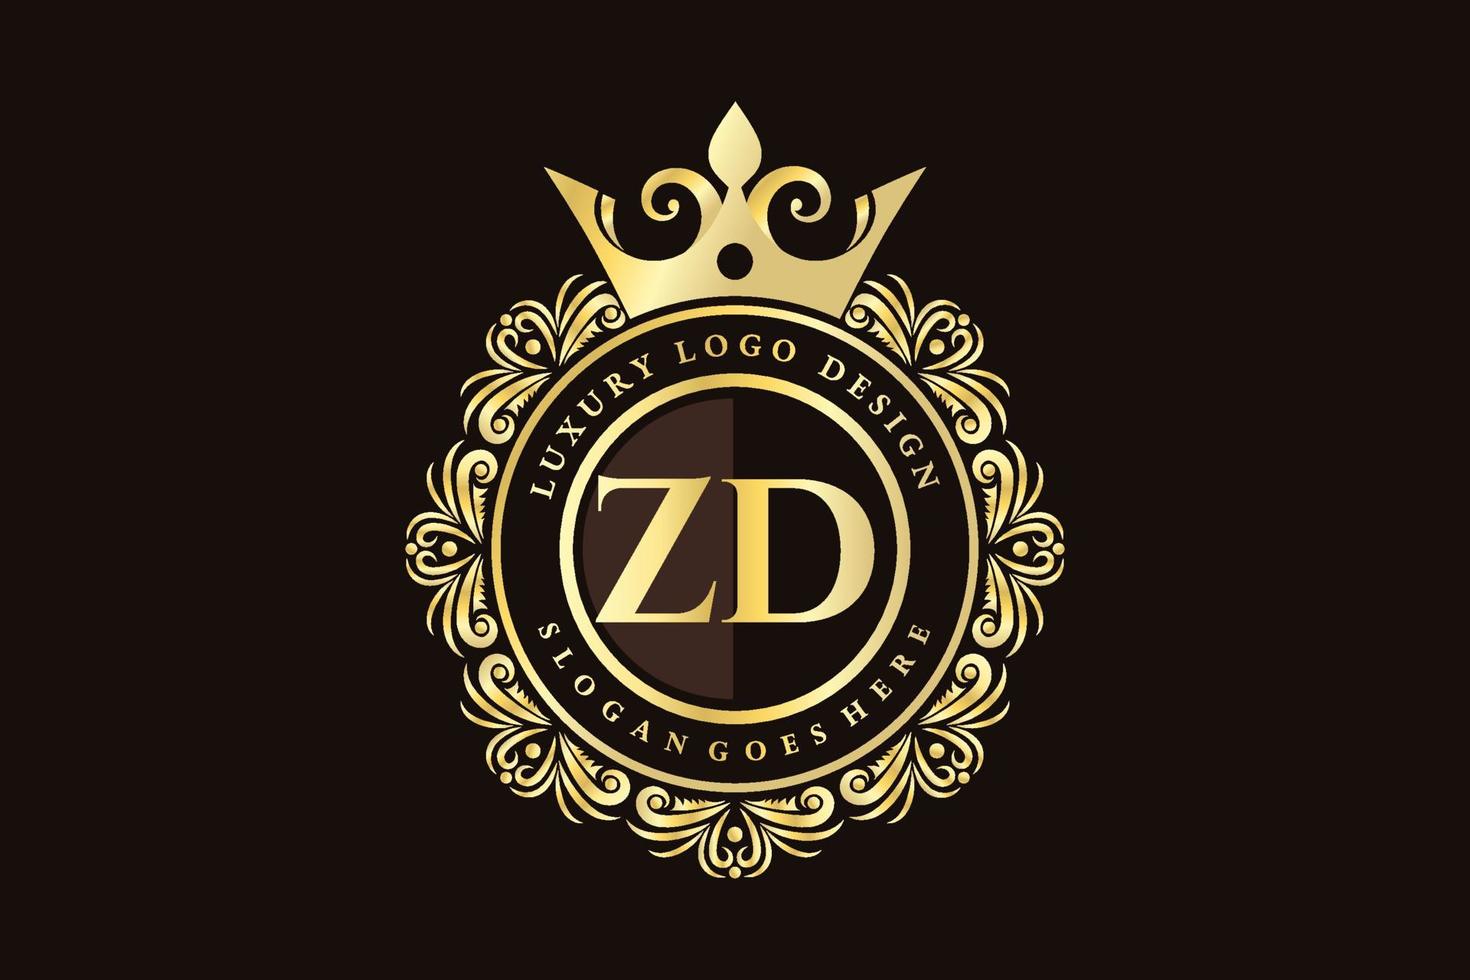 zd letra inicial oro caligráfico femenino floral dibujado a mano monograma heráldico antiguo estilo vintage diseño de logotipo de lujo vector premium